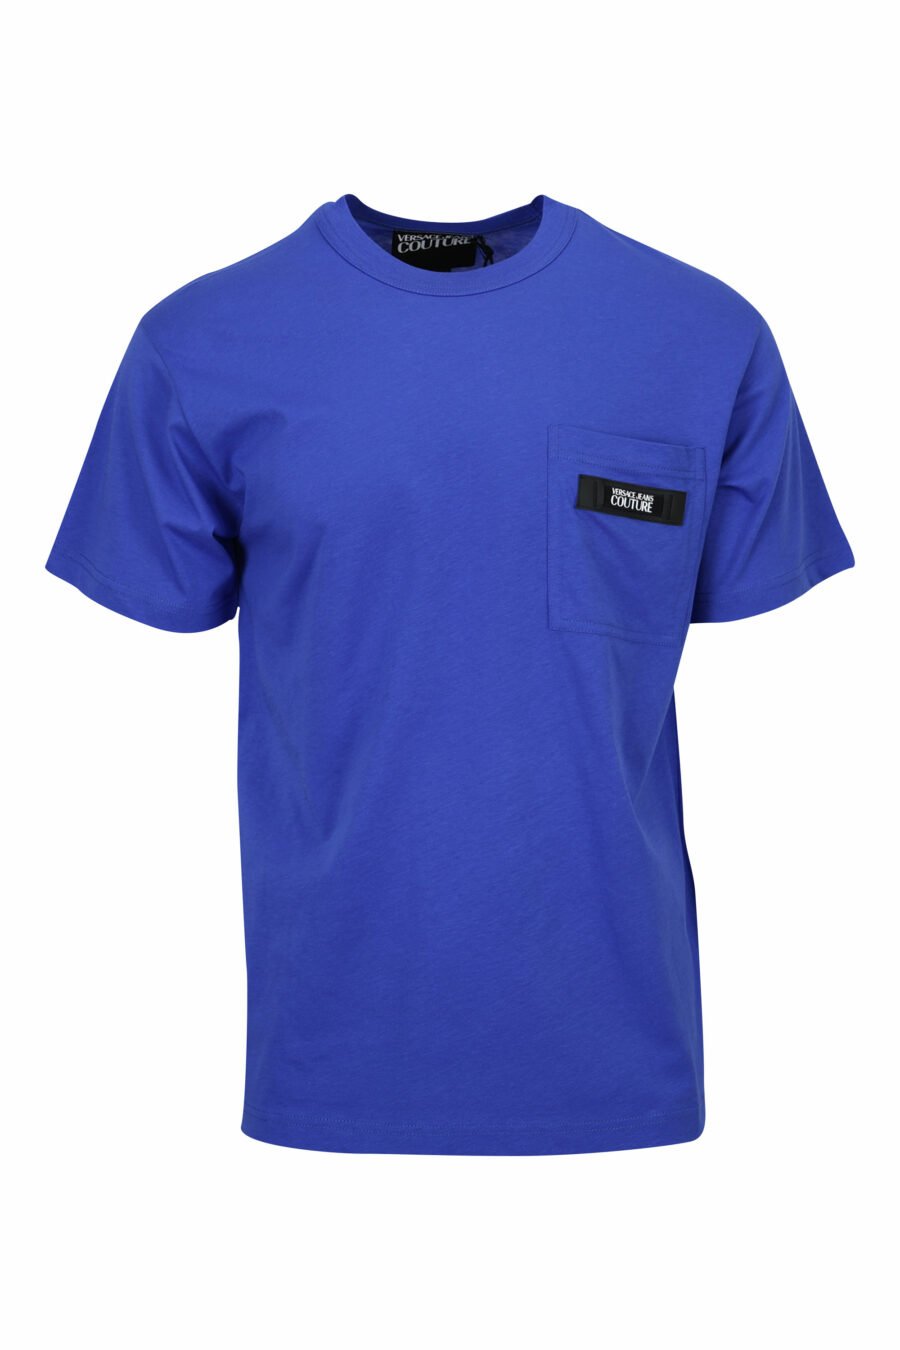 Camiseta azul klein con minilogo etiqueta - 8052019597318